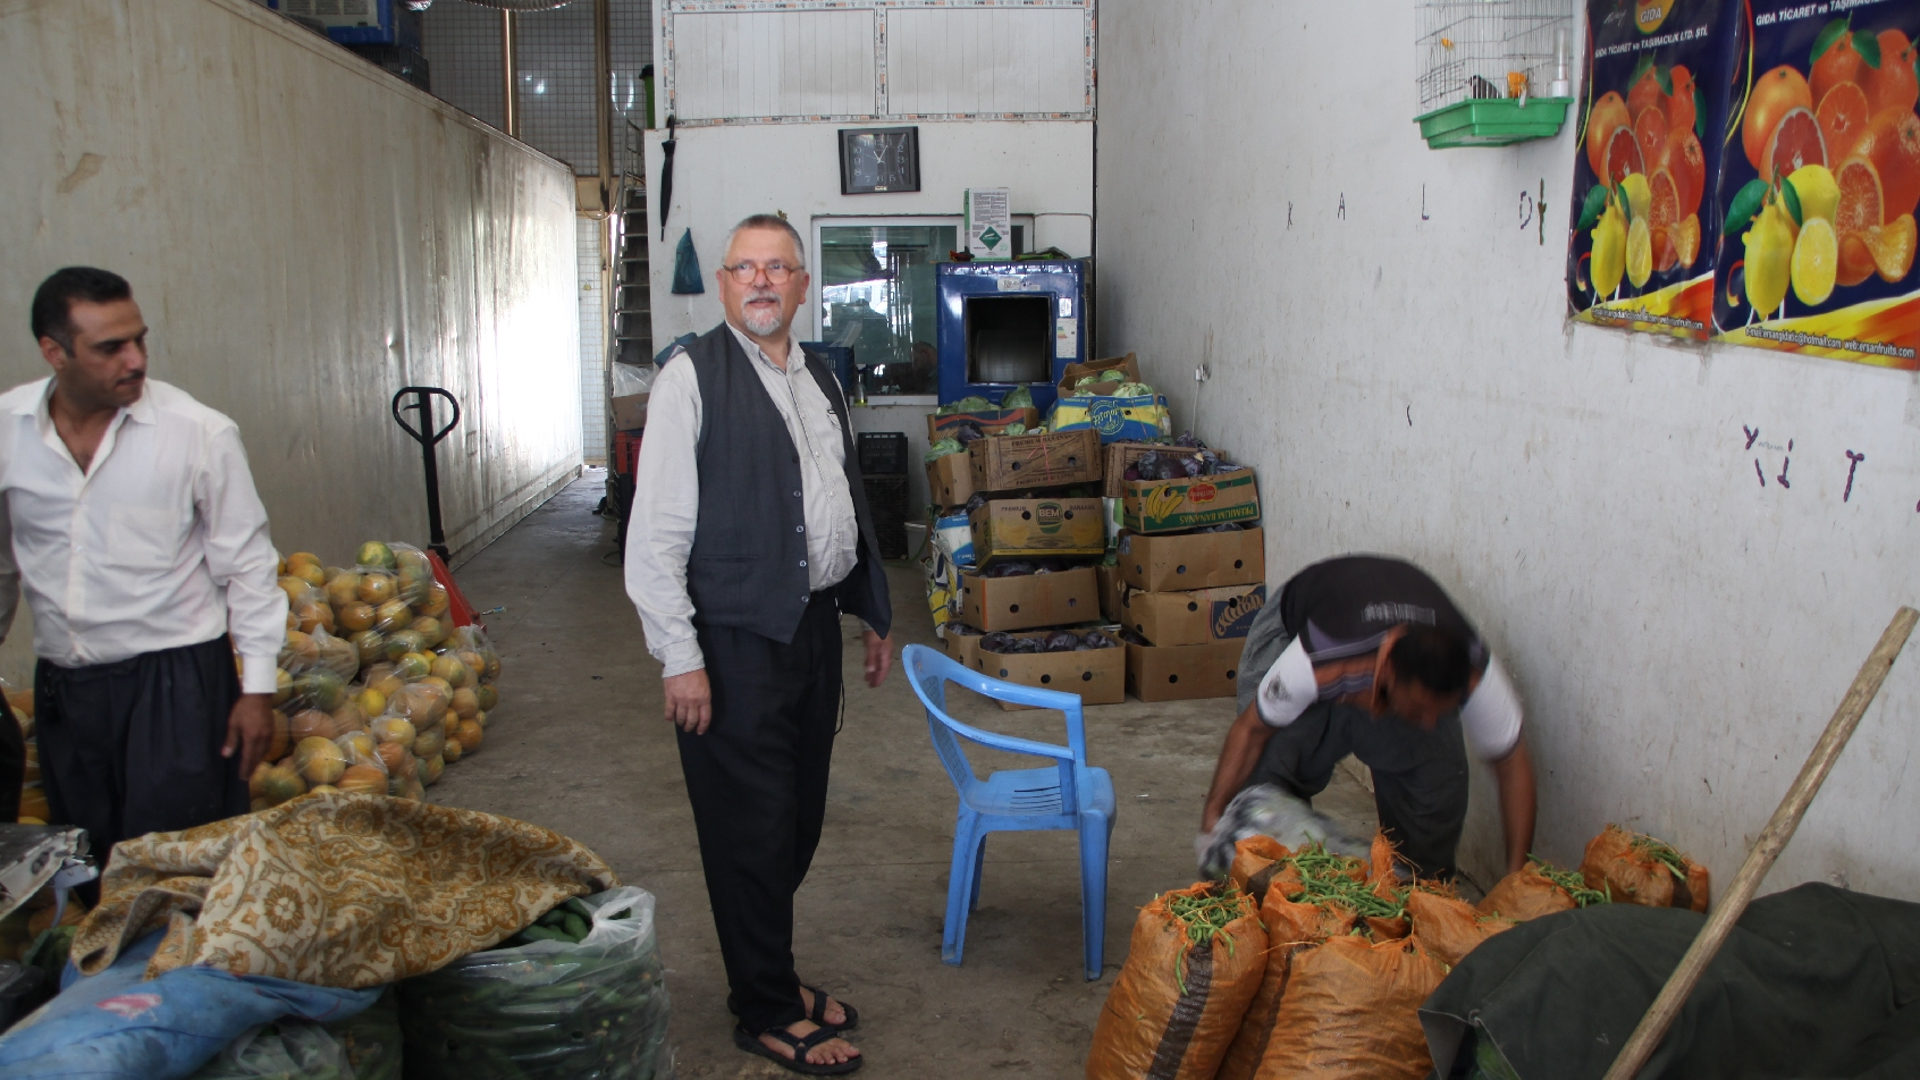 Der chaldäisch-katholische Pater Jens Petzold beim Kauf von Essen für seine Gemeinschaft